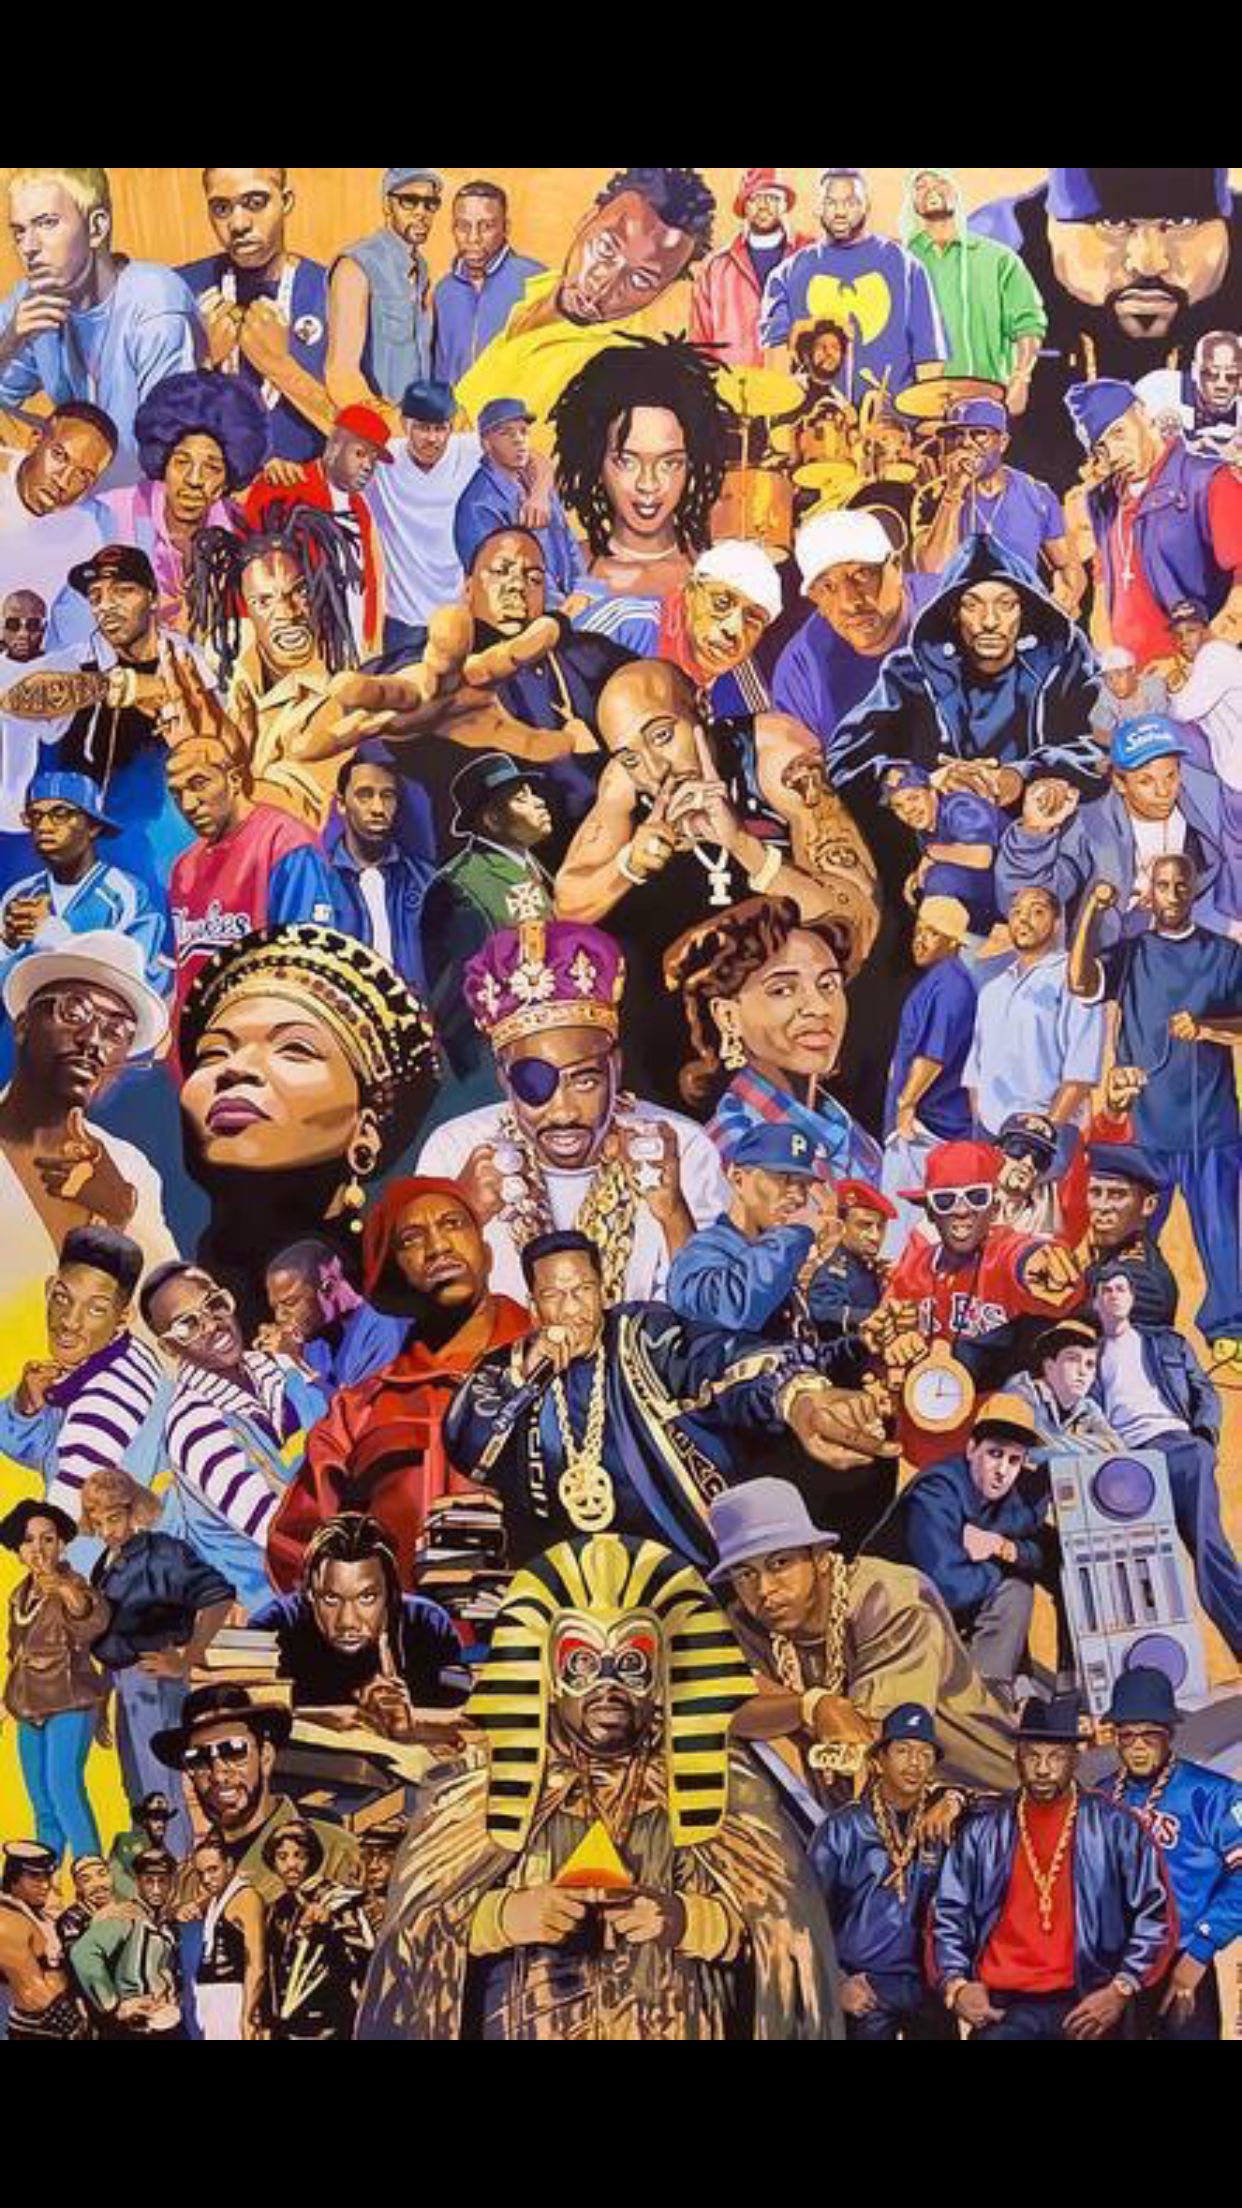 New Rap Wallpaper 2020